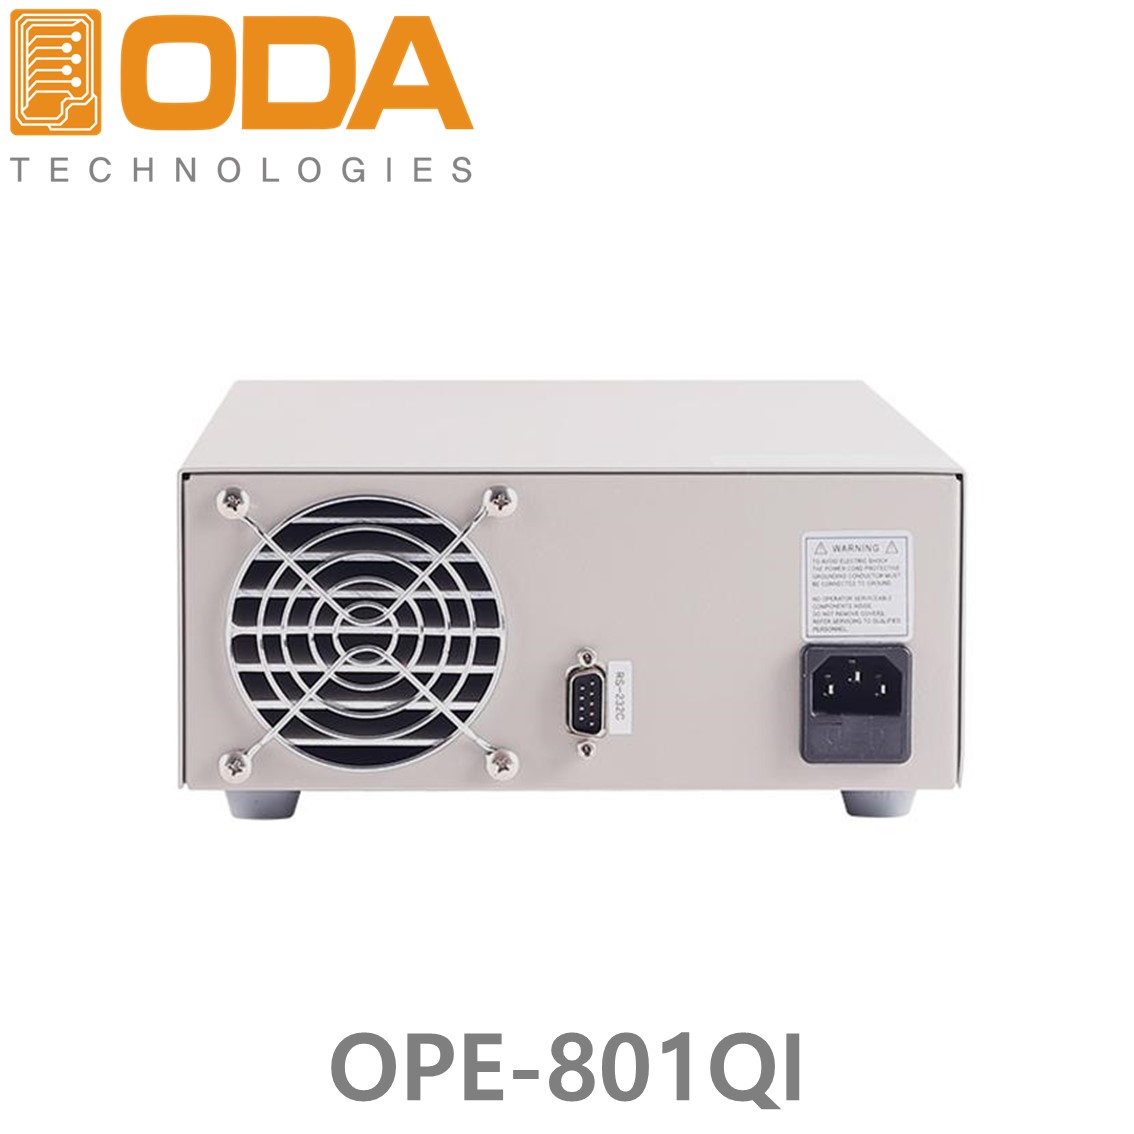 [ ODA ] OPE-801QI,  ±80V/1A x 2채널, 5V(or 3.3V)/2A x 1채널, 15V(or 12V)/1A x 1채널 160W